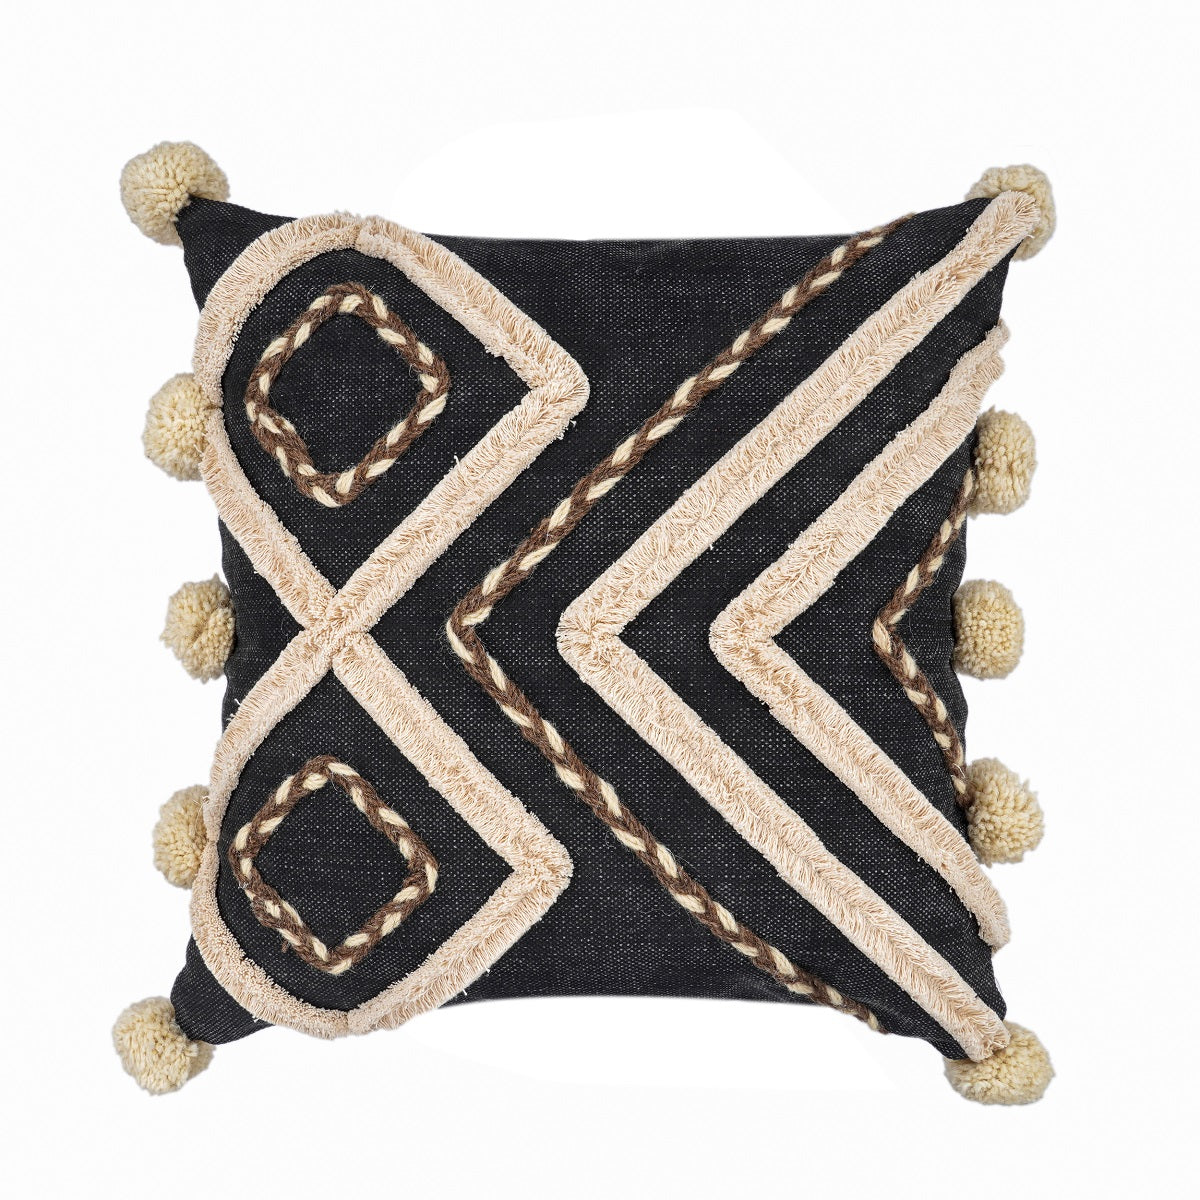 Moroccan Cushion Tassel Cushion Boho Cushion Hand Tufted Cushion Decorative l Pillow Lumber Pillow 50*50cm